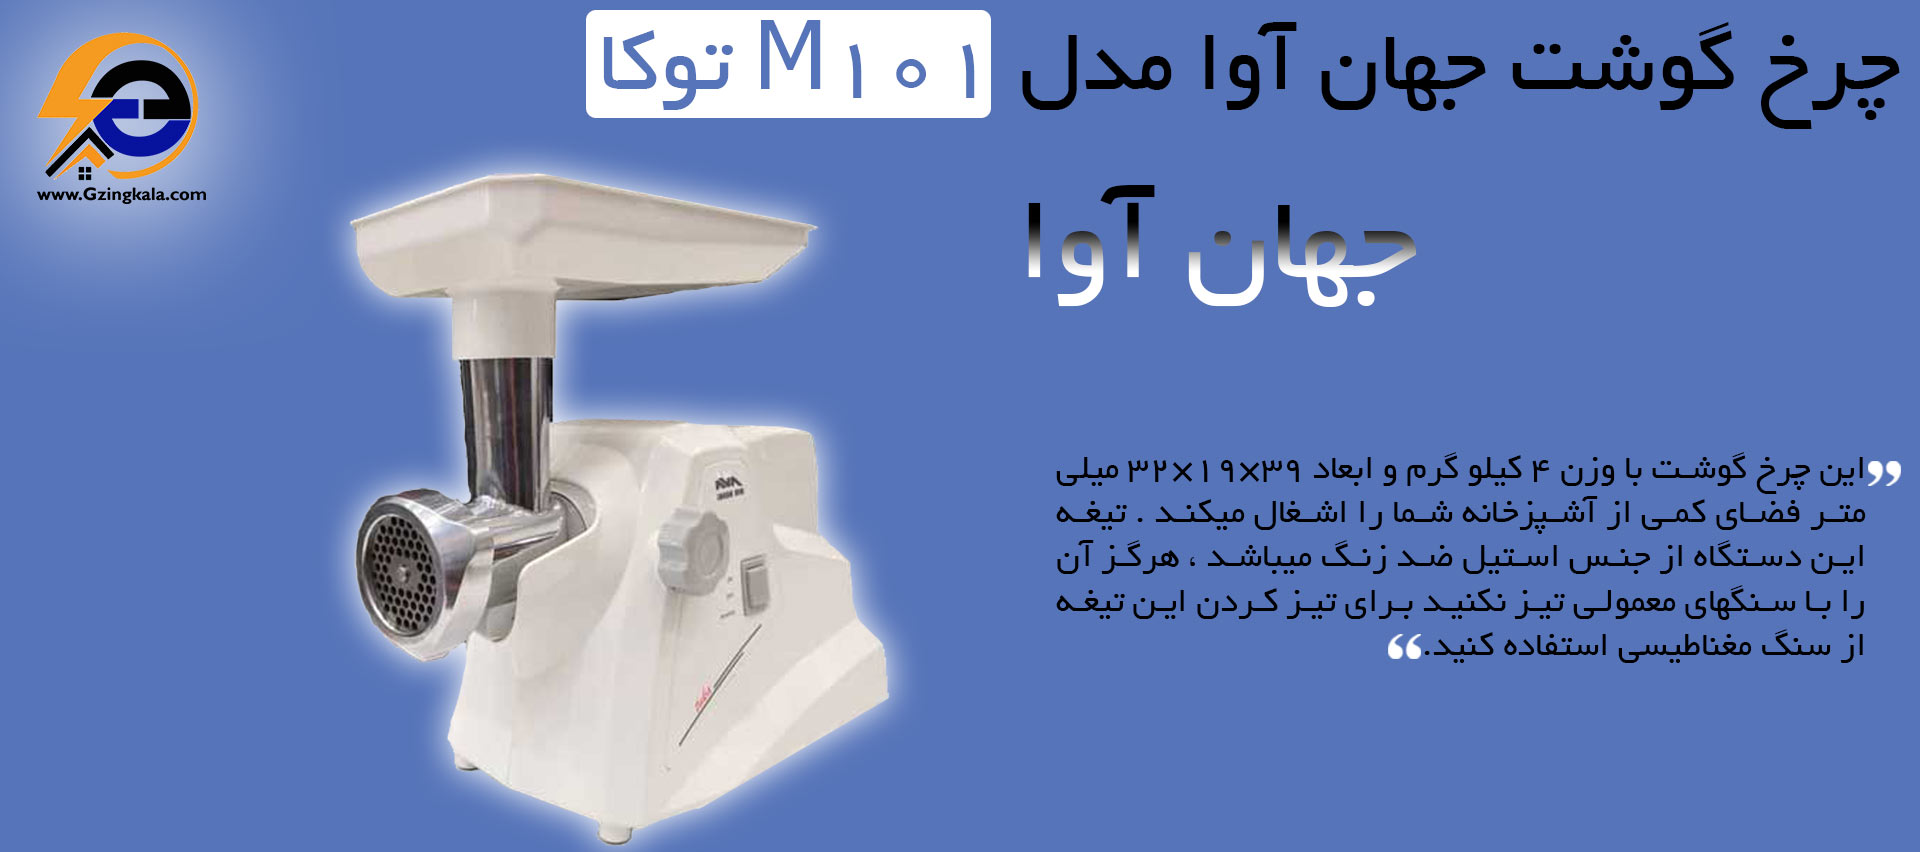 چرخ گوشت جهان آوا مدل M101 توکا